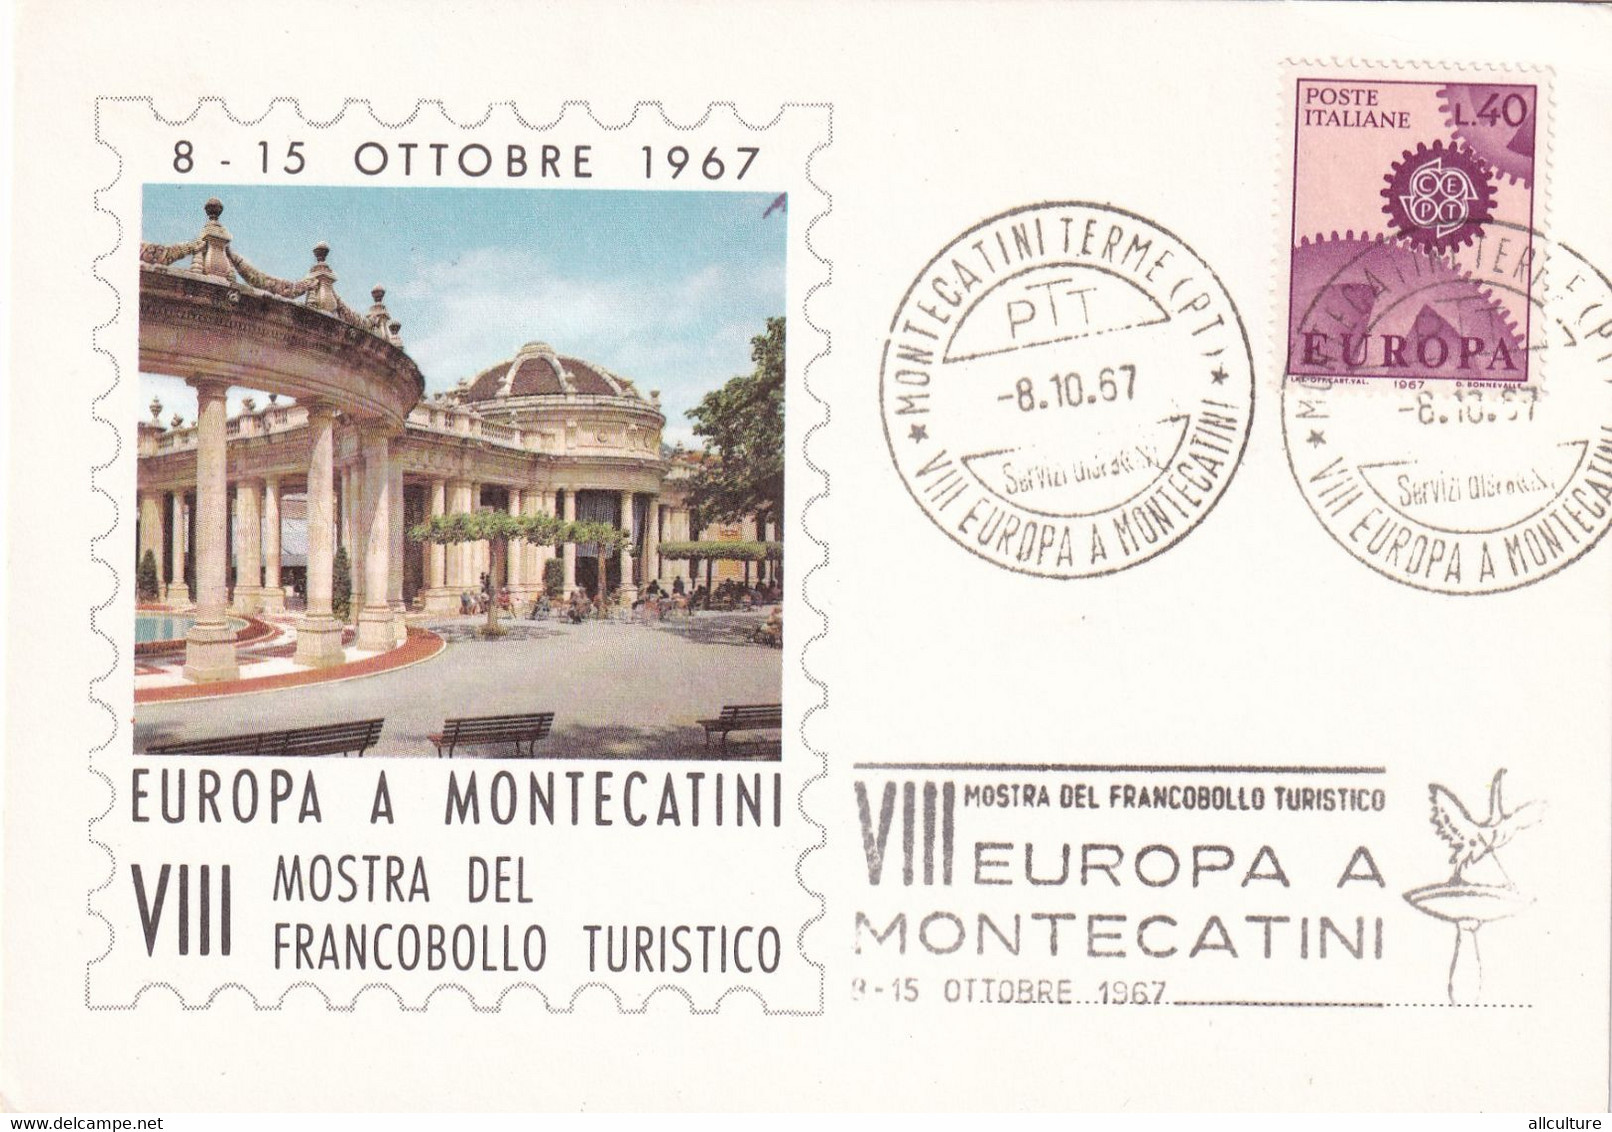 A10914- EUROPA A MONTECATINI, MOSTRA DEL FRANCOBOLLO TURISTICO, 1967 PISTOIA POSTE ITALIANE USED STAMPS - 1961-70: Used